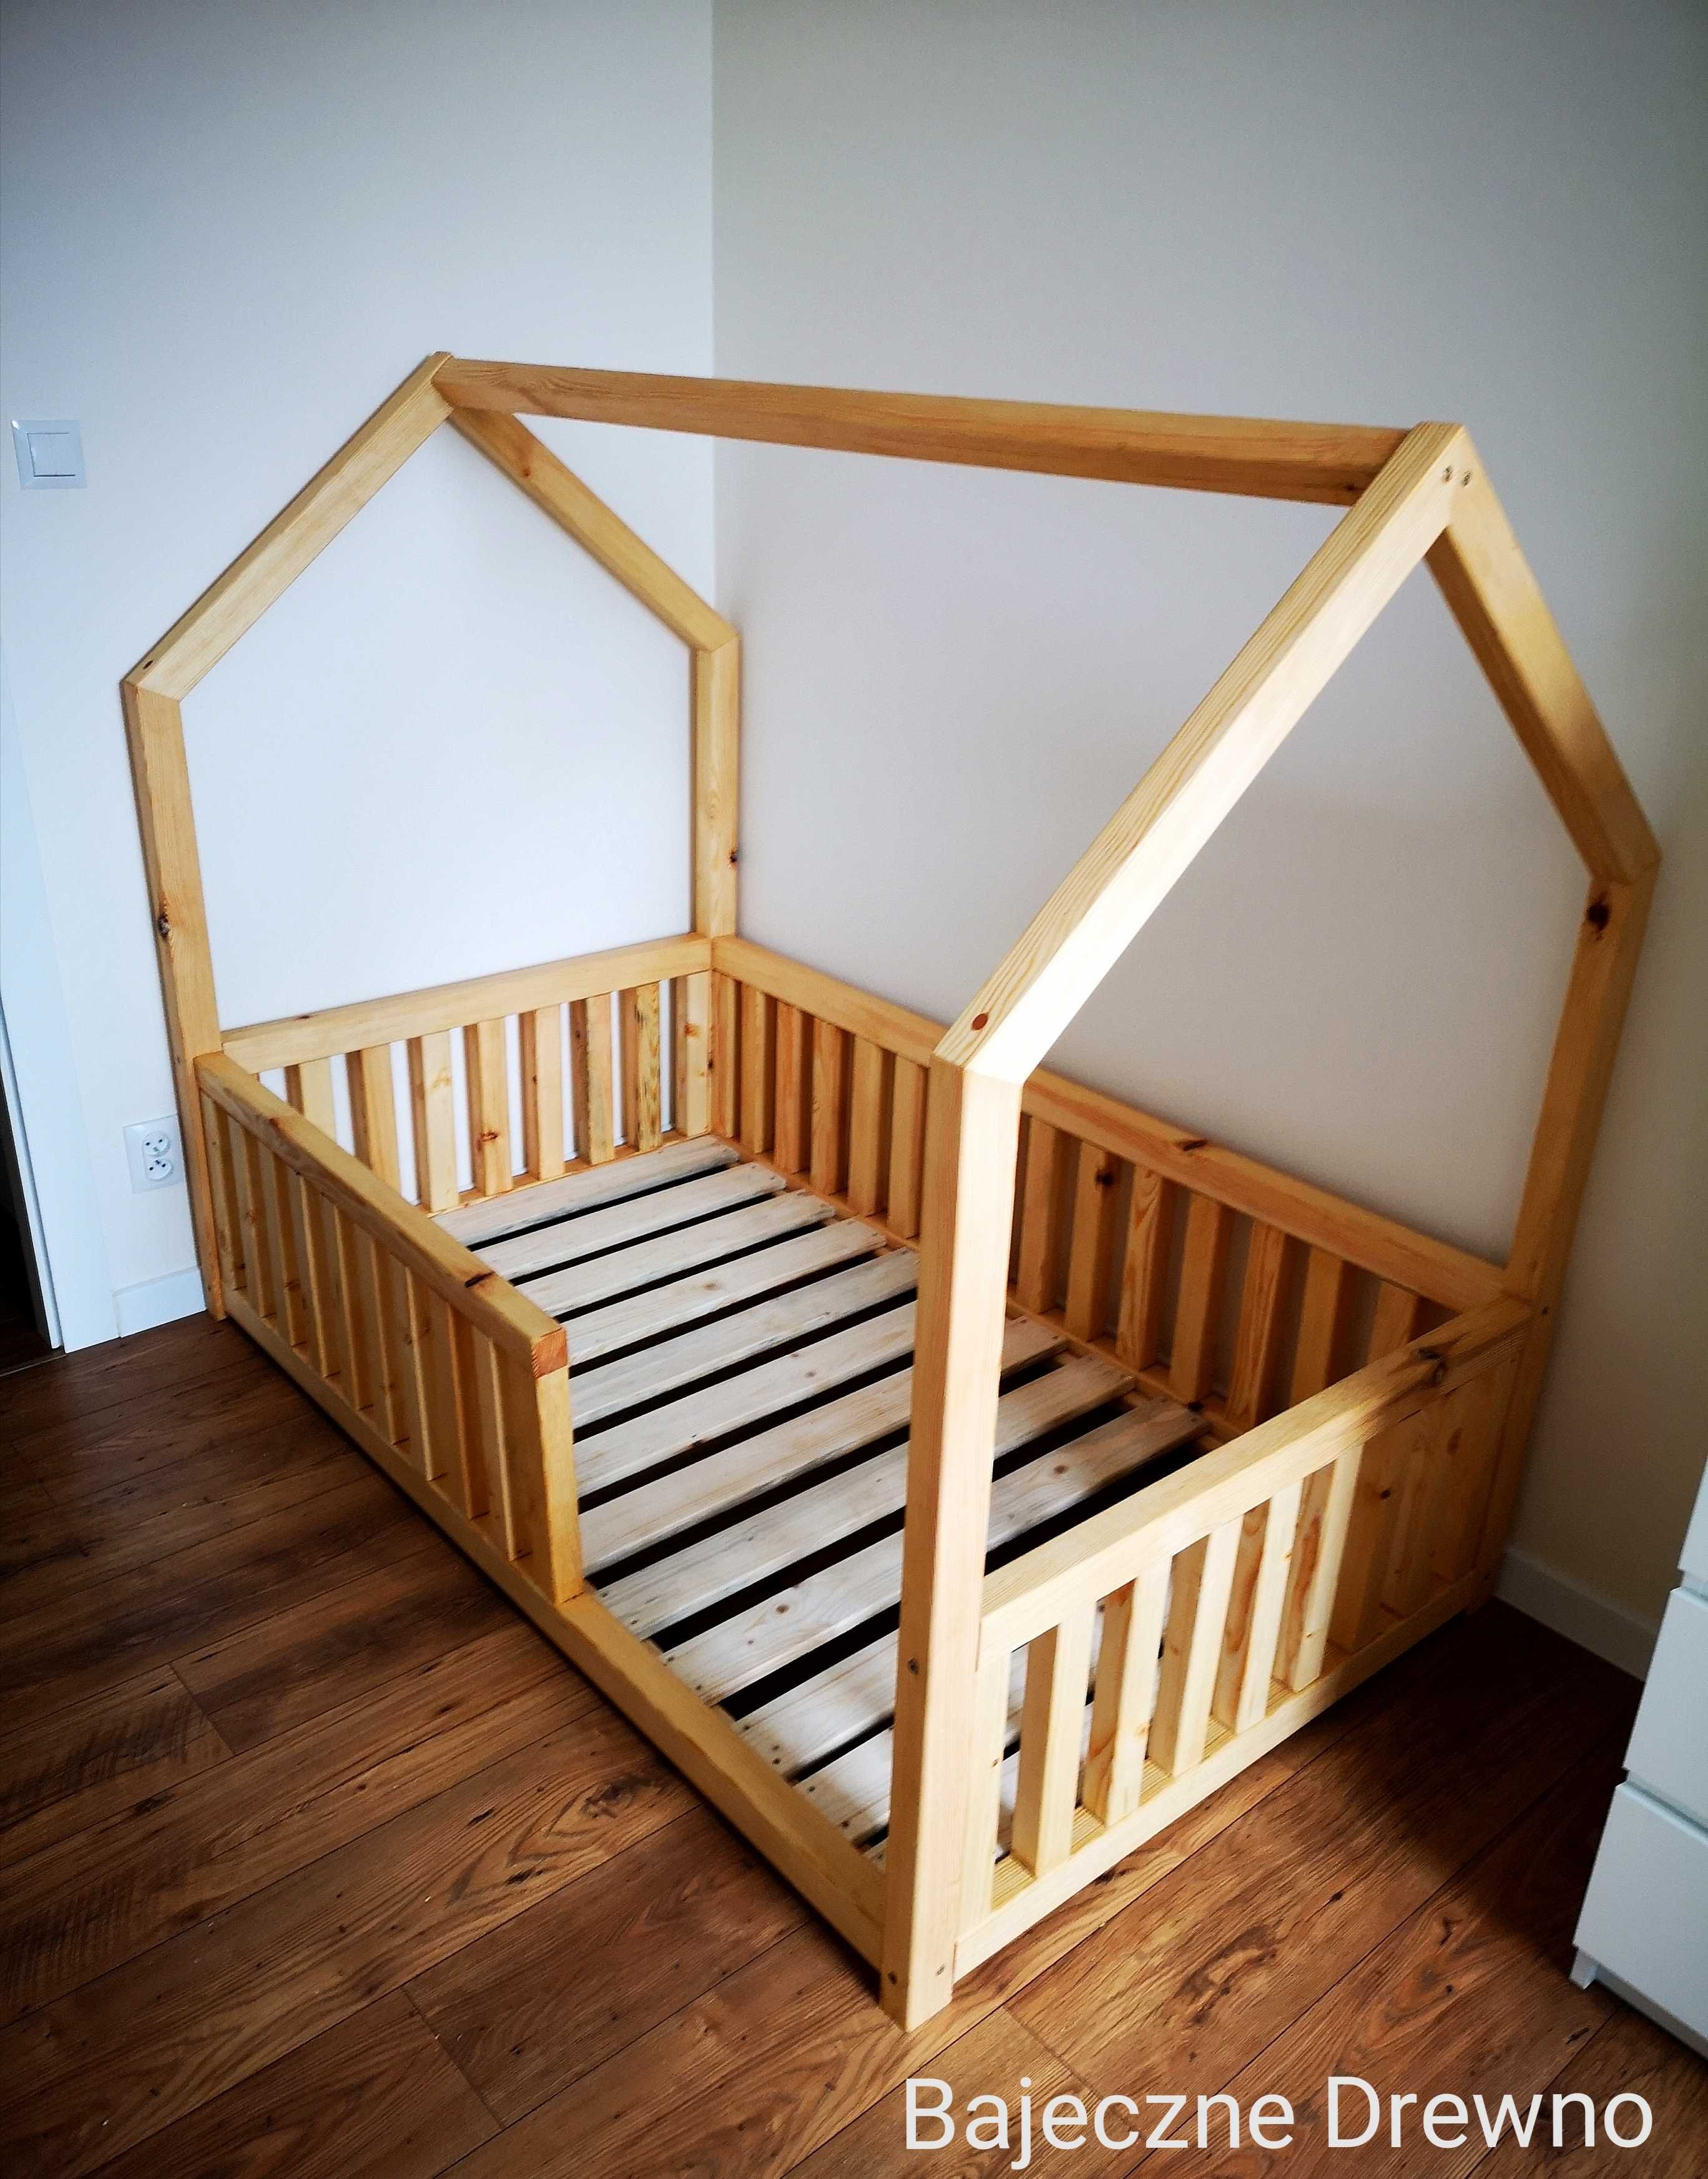 Łóżko dla dziecka (Drewniany domek, łóżko dom) - Bajeczne Drewno